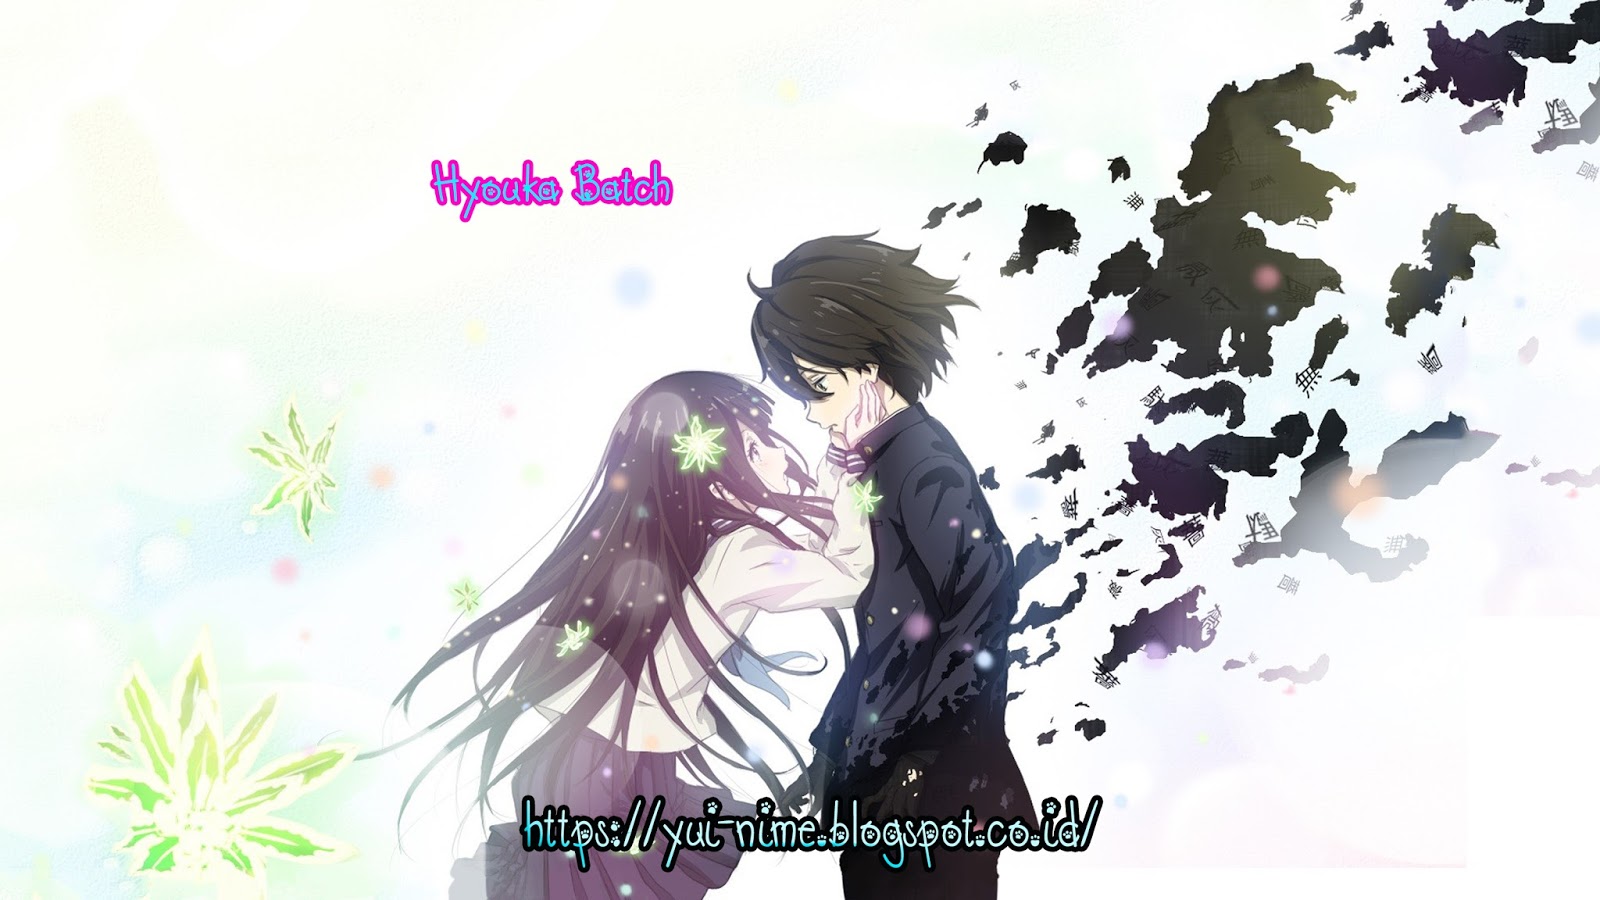 Download Wallpaper Anime Hd Batch - Anime Hyouka - 1600x900 Wallpaper -  